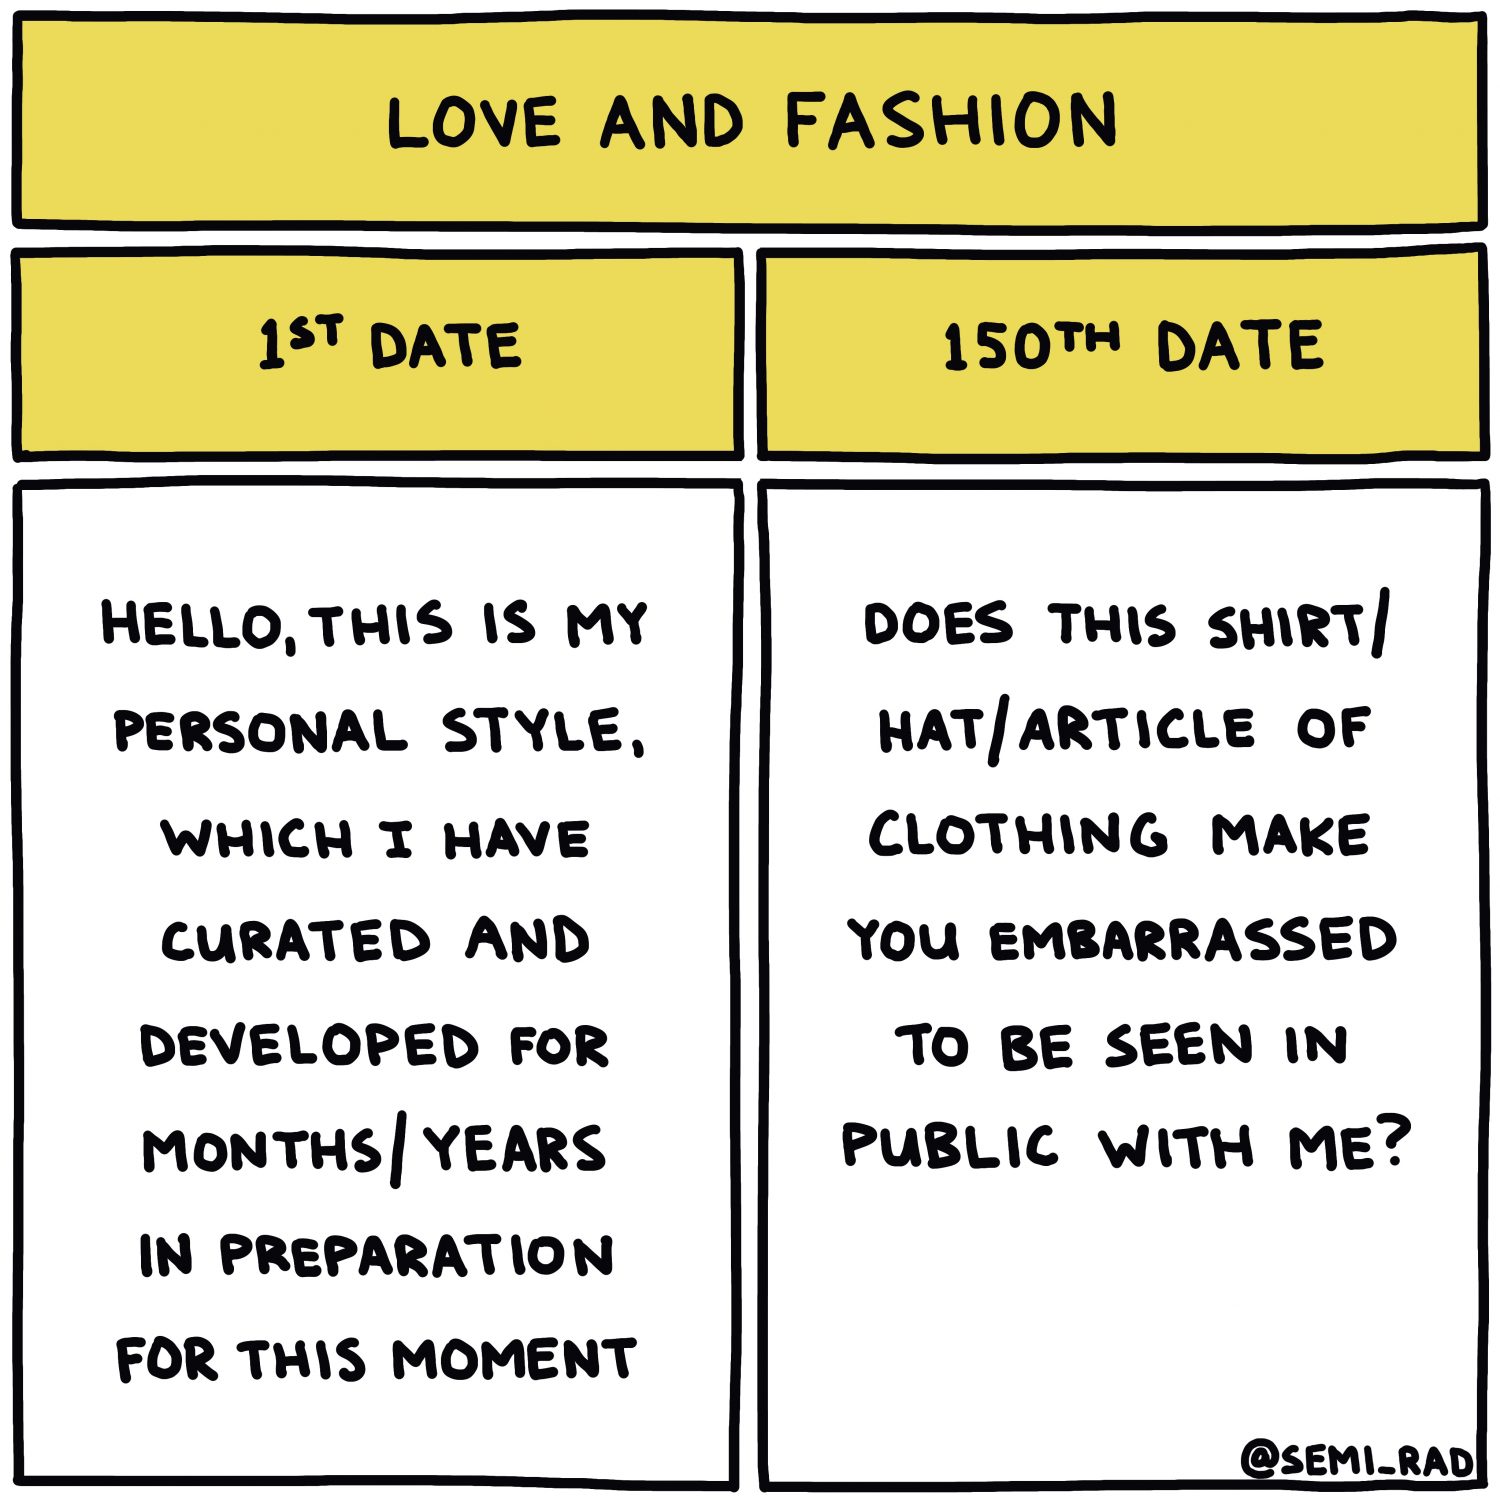 semi-rad chart: love and fashion